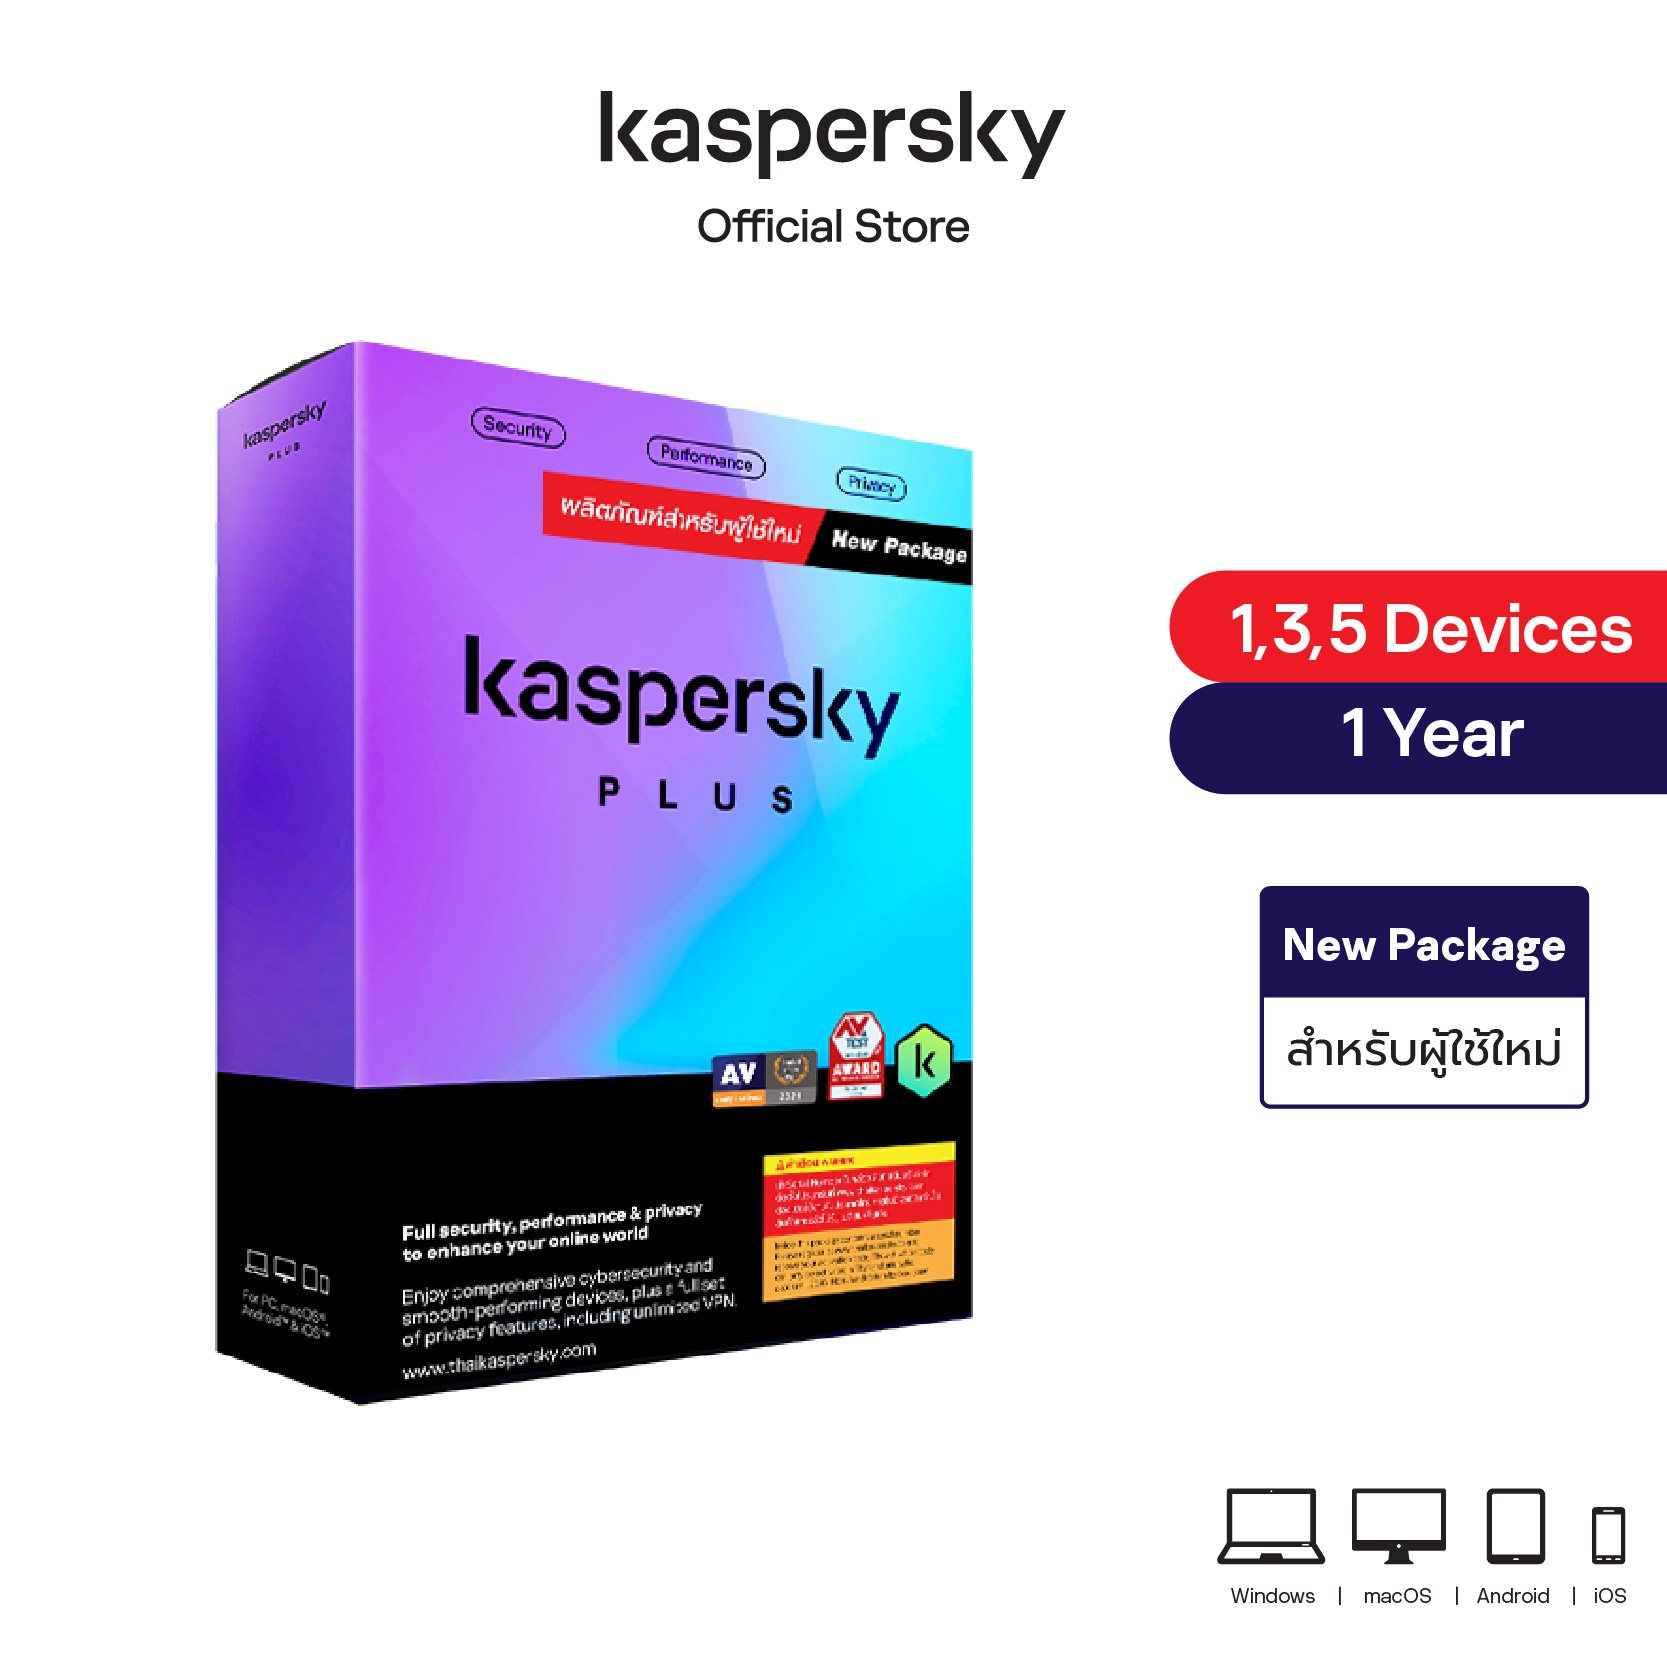 Kaspersky Plus (New Package)